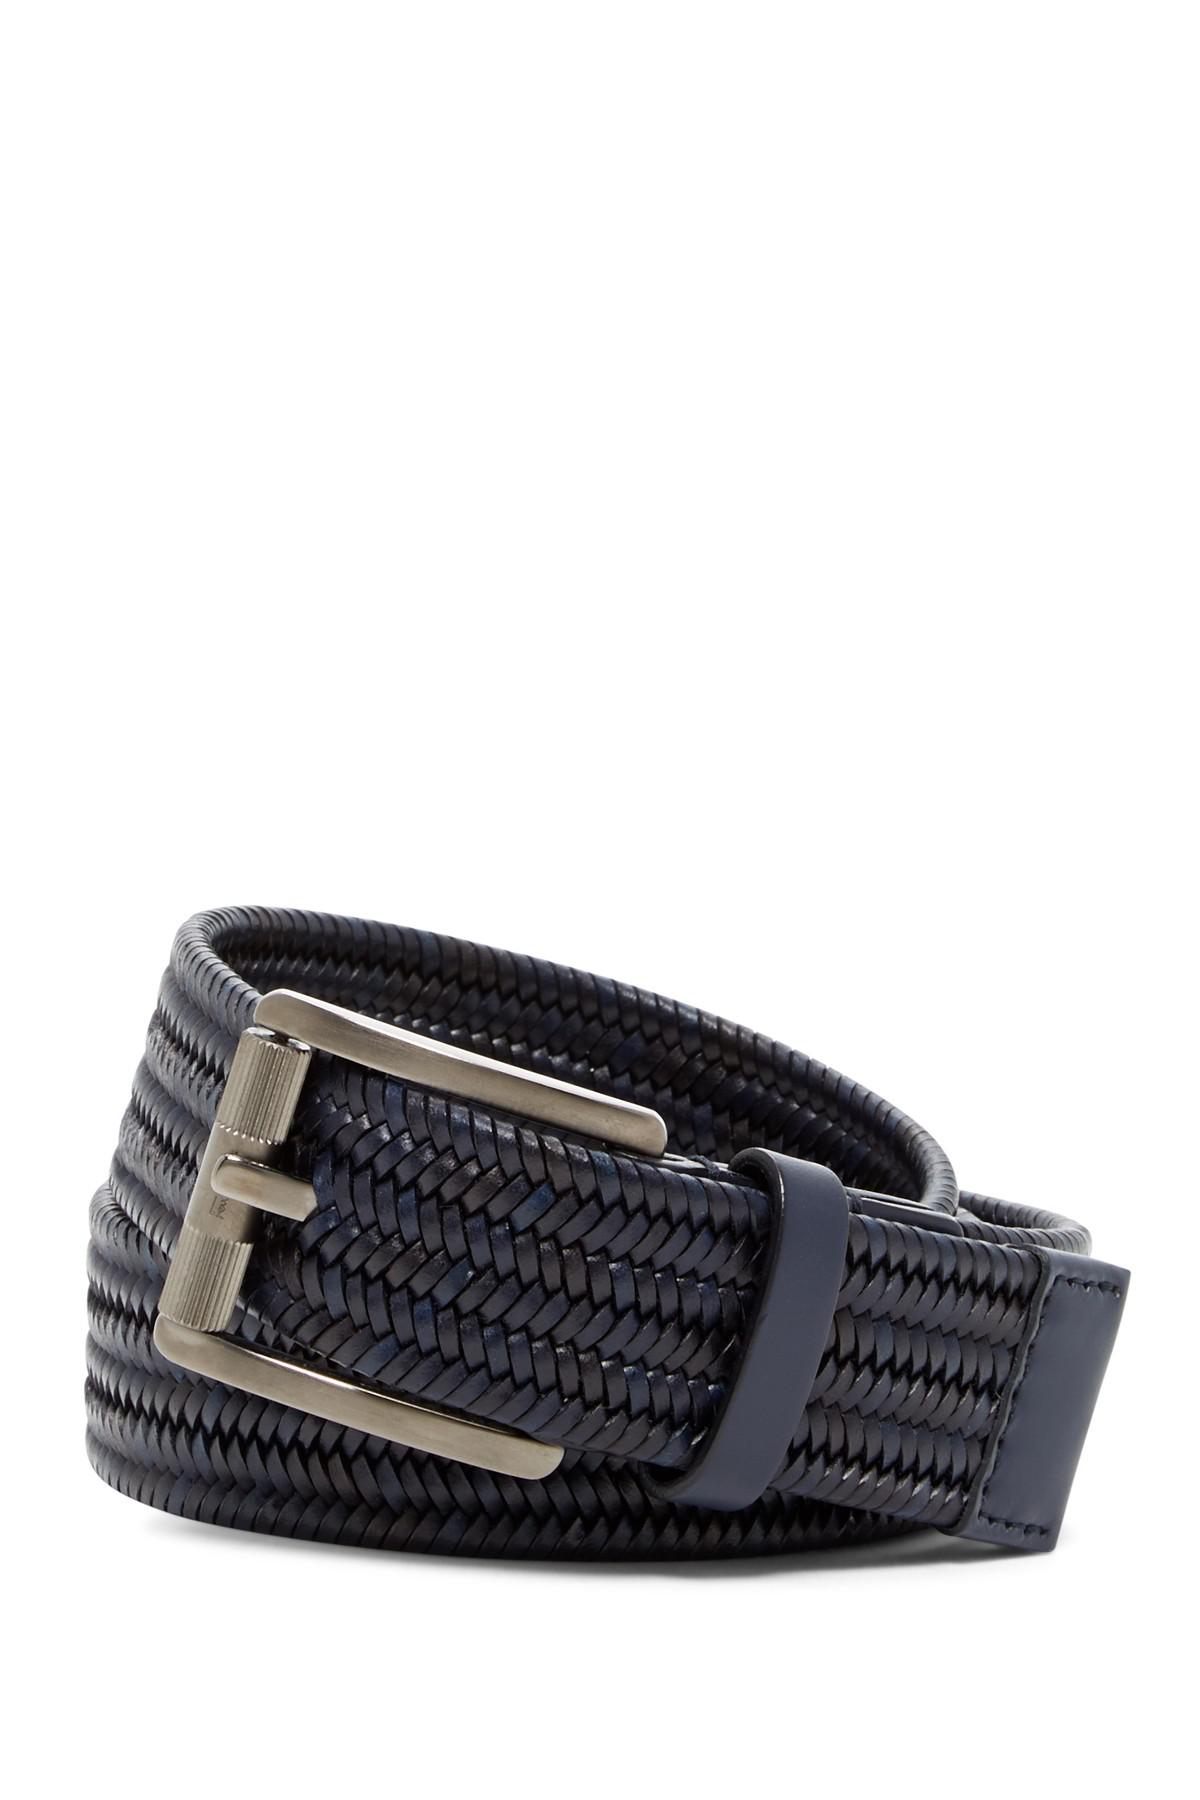 Ferragamo Woven Leather Belt in Blue 58 (Blue) for Men - Lyst